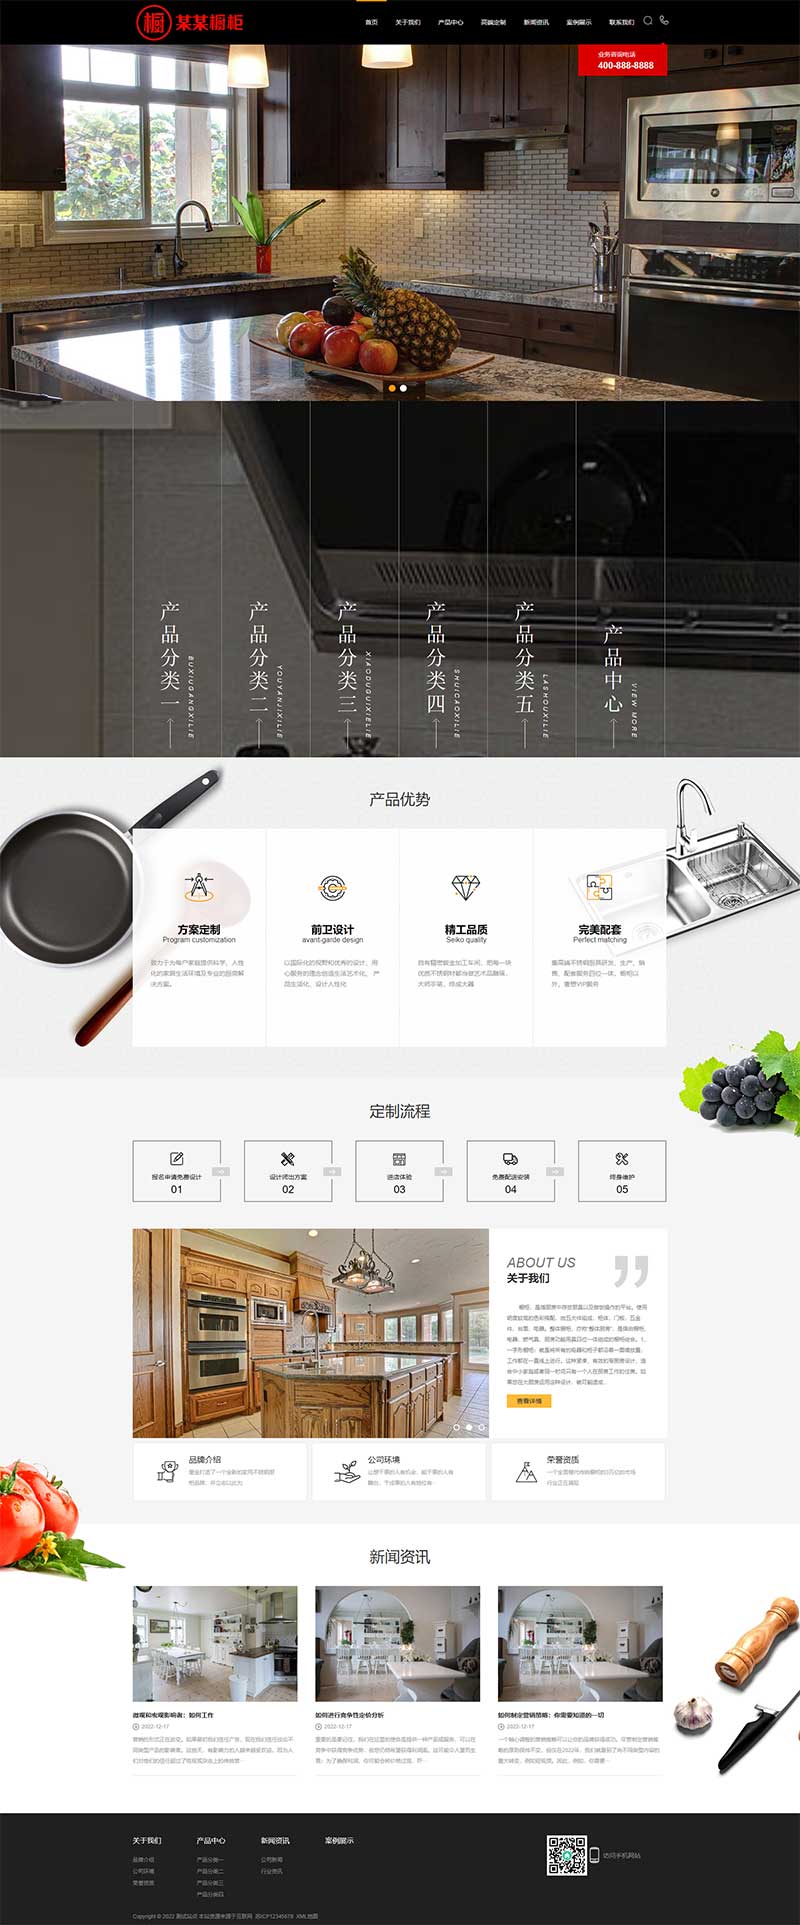 (PC+WAP)黑色精美高端橱柜厨具用品企业网站电脑端模板展示图片